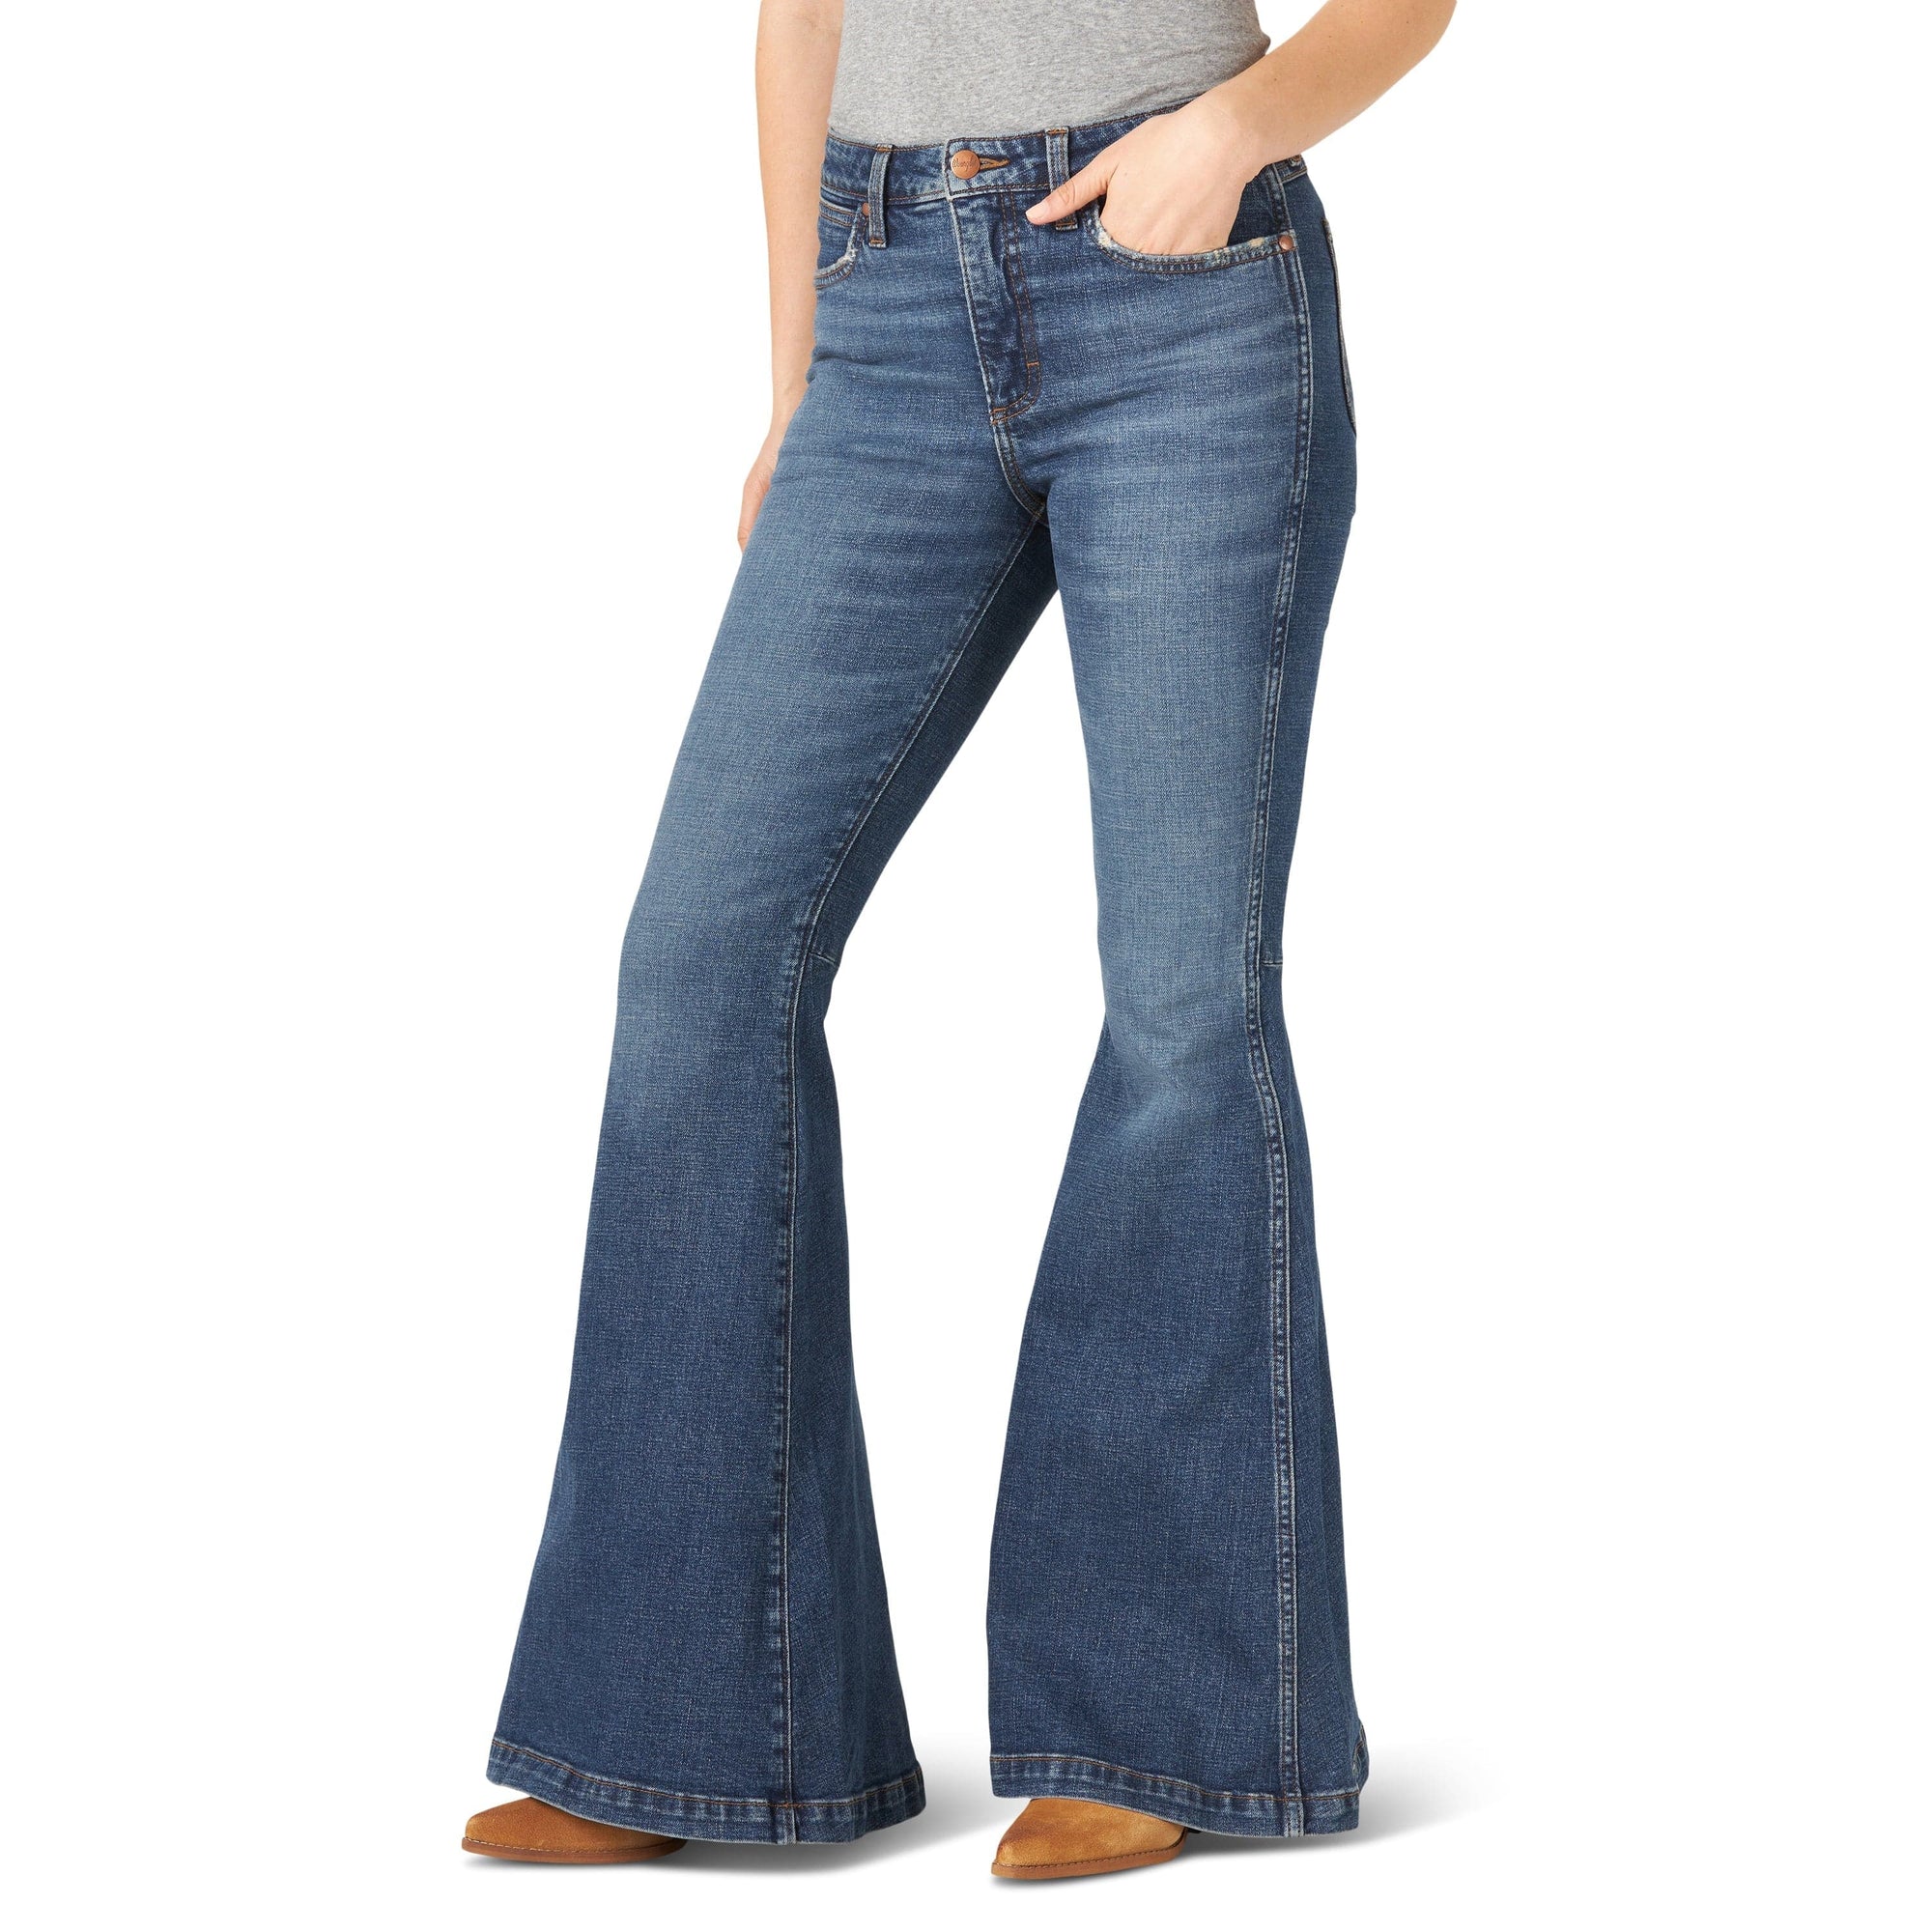 WRANGLER JEANS Jeans Wrangler Women's Retro Green Flare Leg Jean 11MPFKP